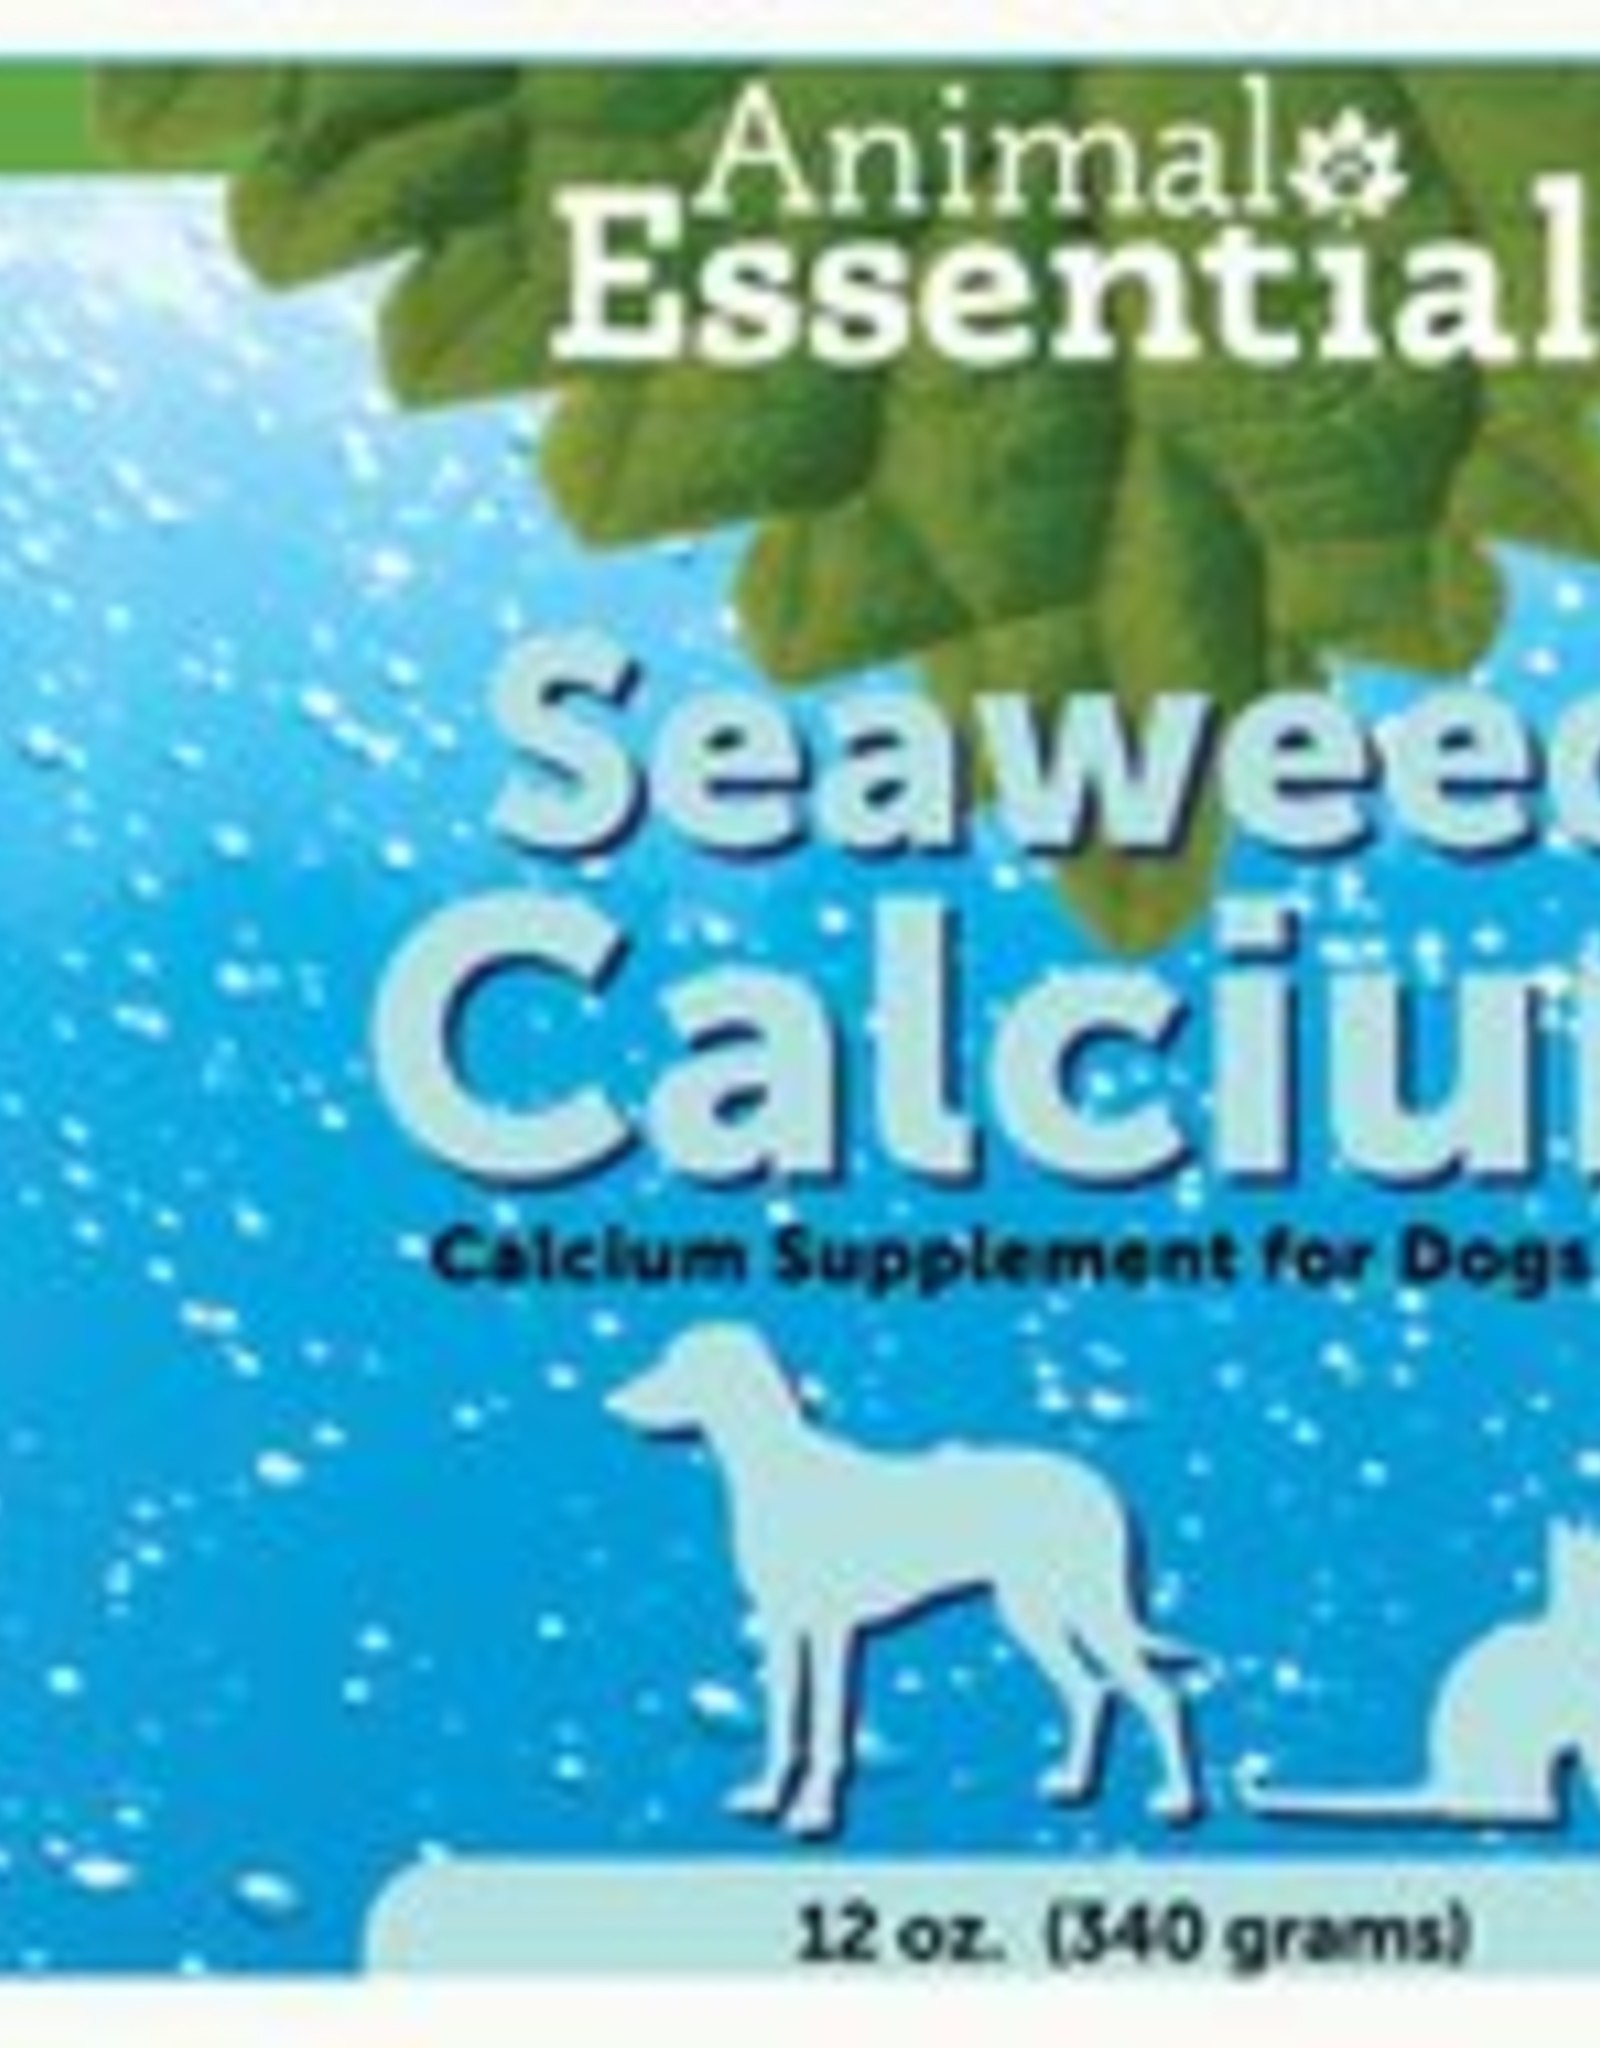 Animal Essentials Animal Essentials Seaweed Calcium 12oz